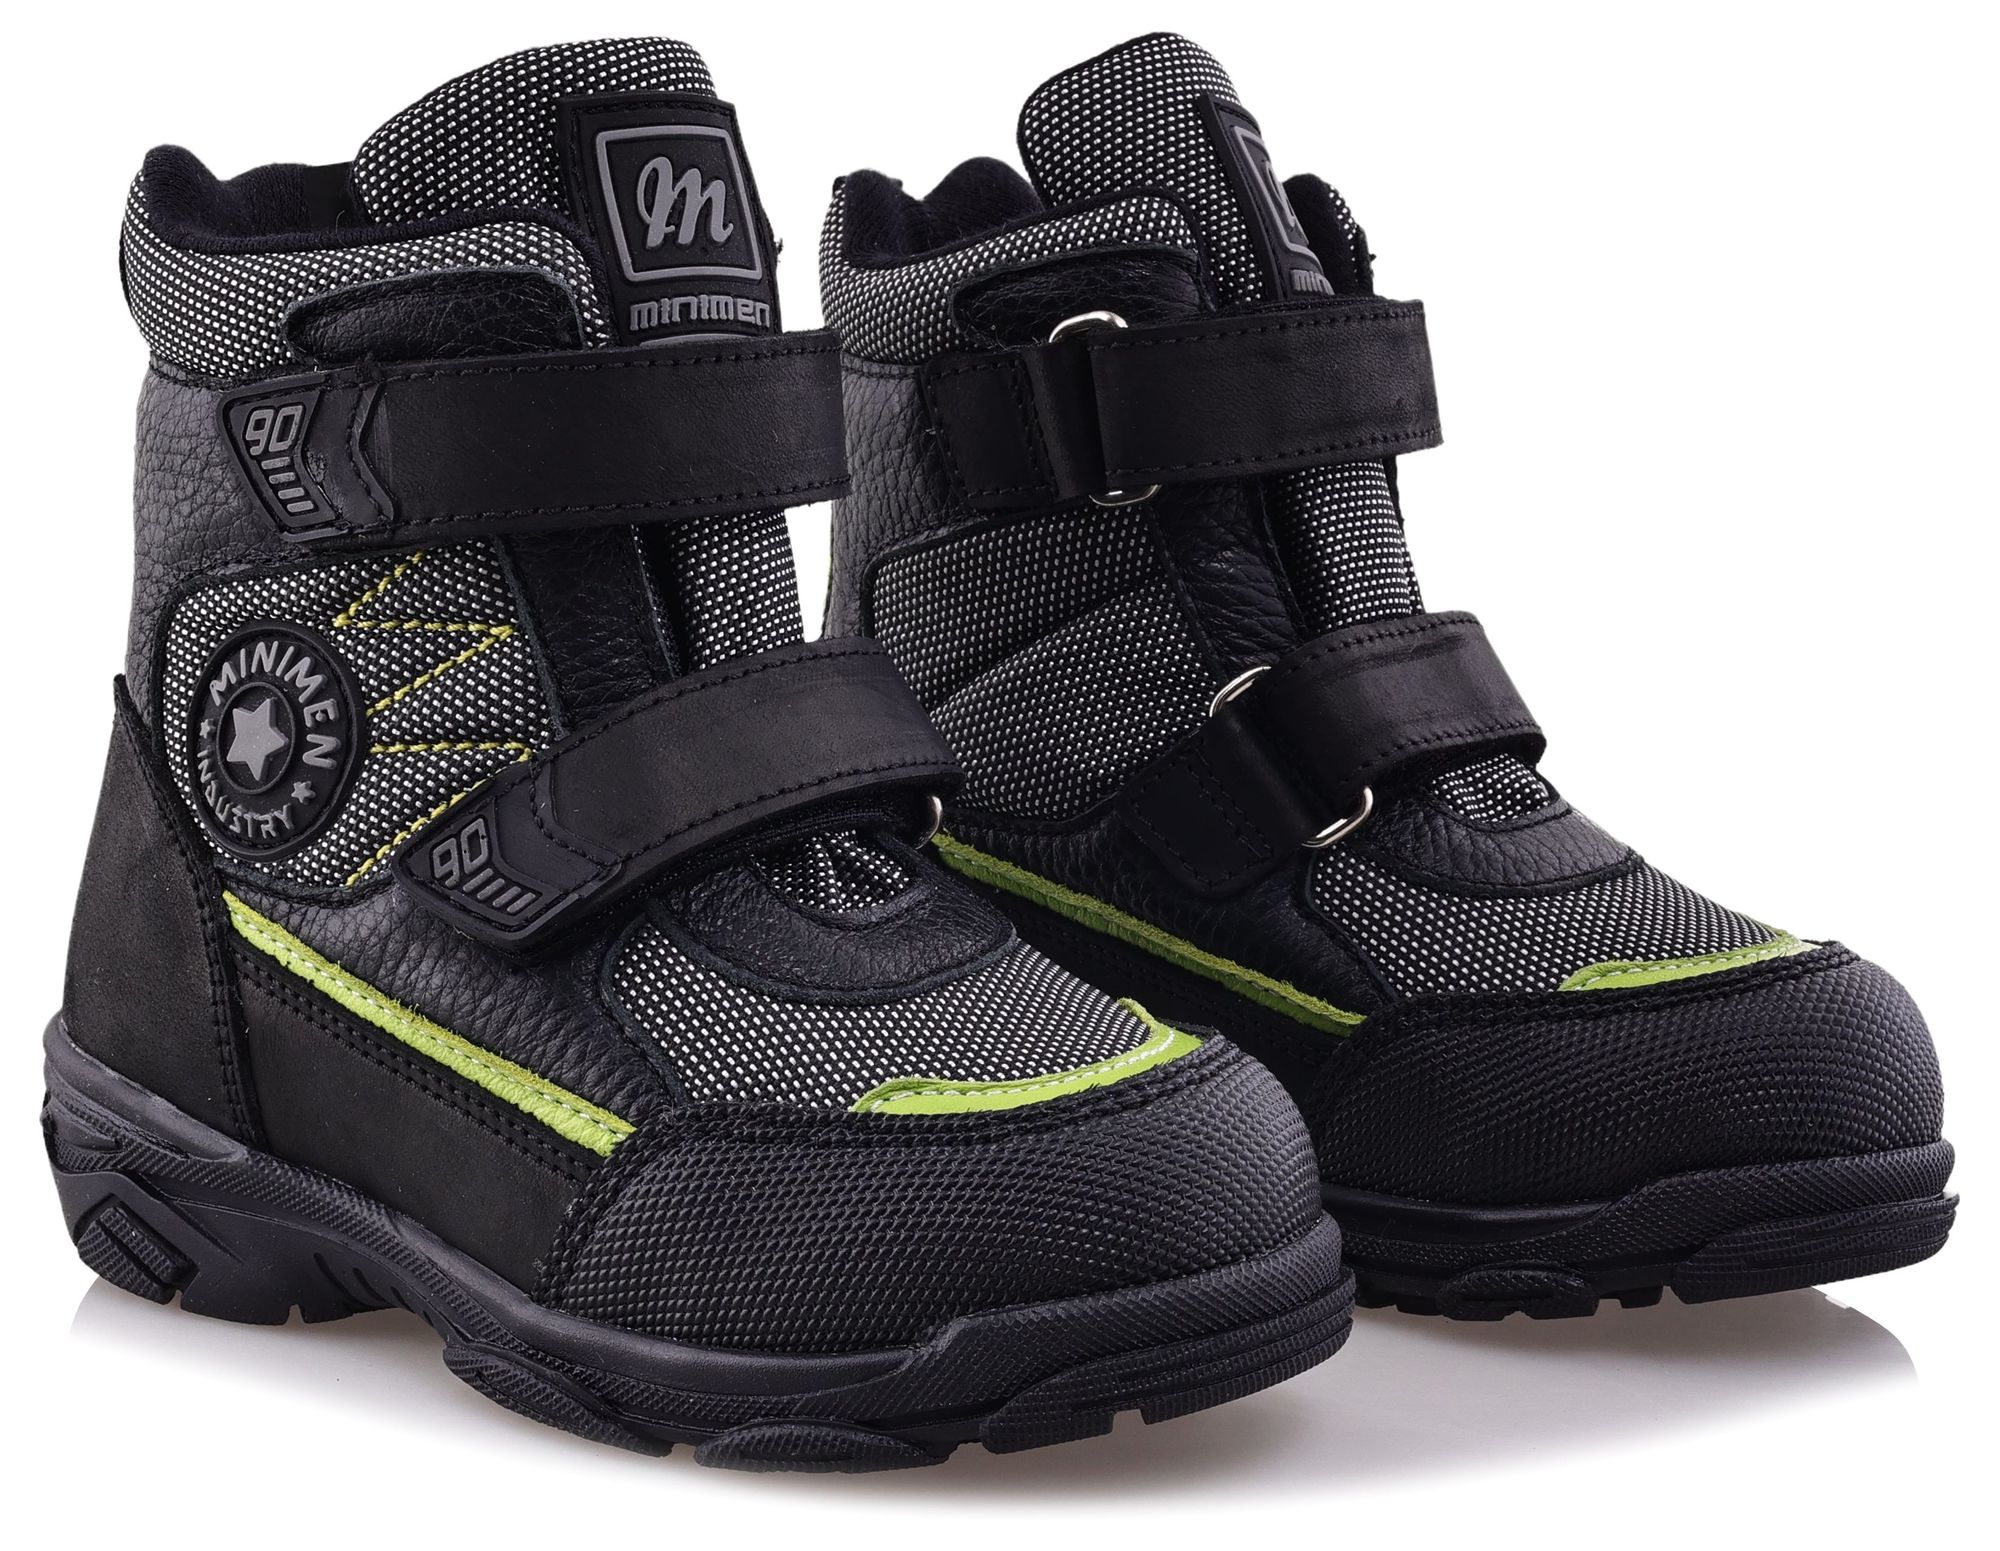 Ботинки Minimen для мальчиков, чёрные, размер 27, 2657-63-23B-02